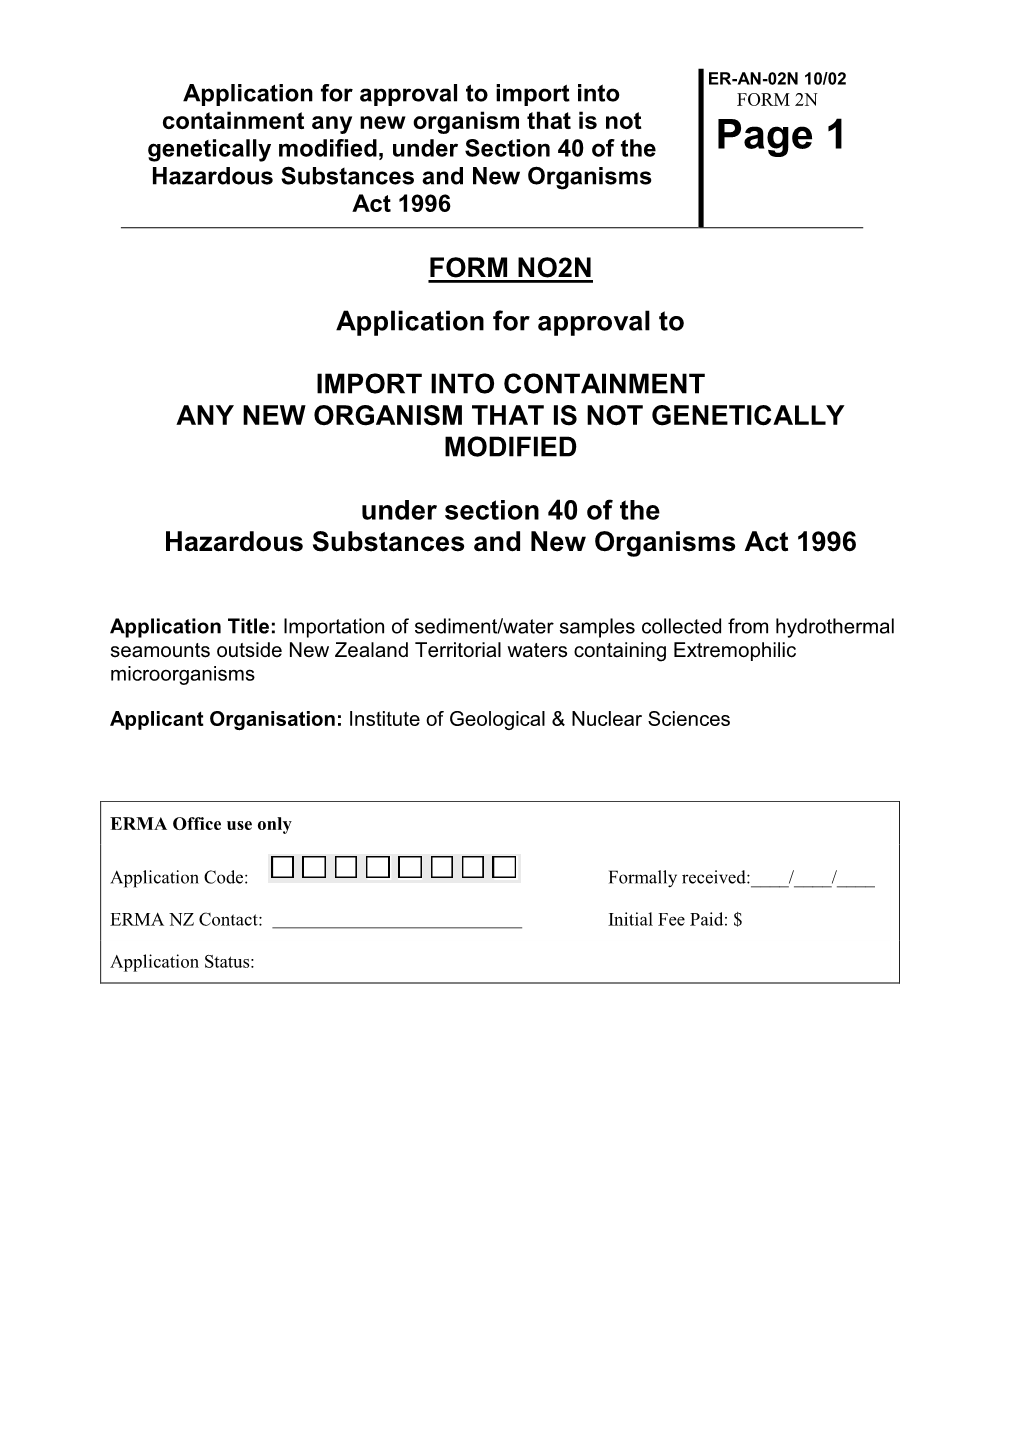 NOC04013 Application.Pdf(PDF, 453